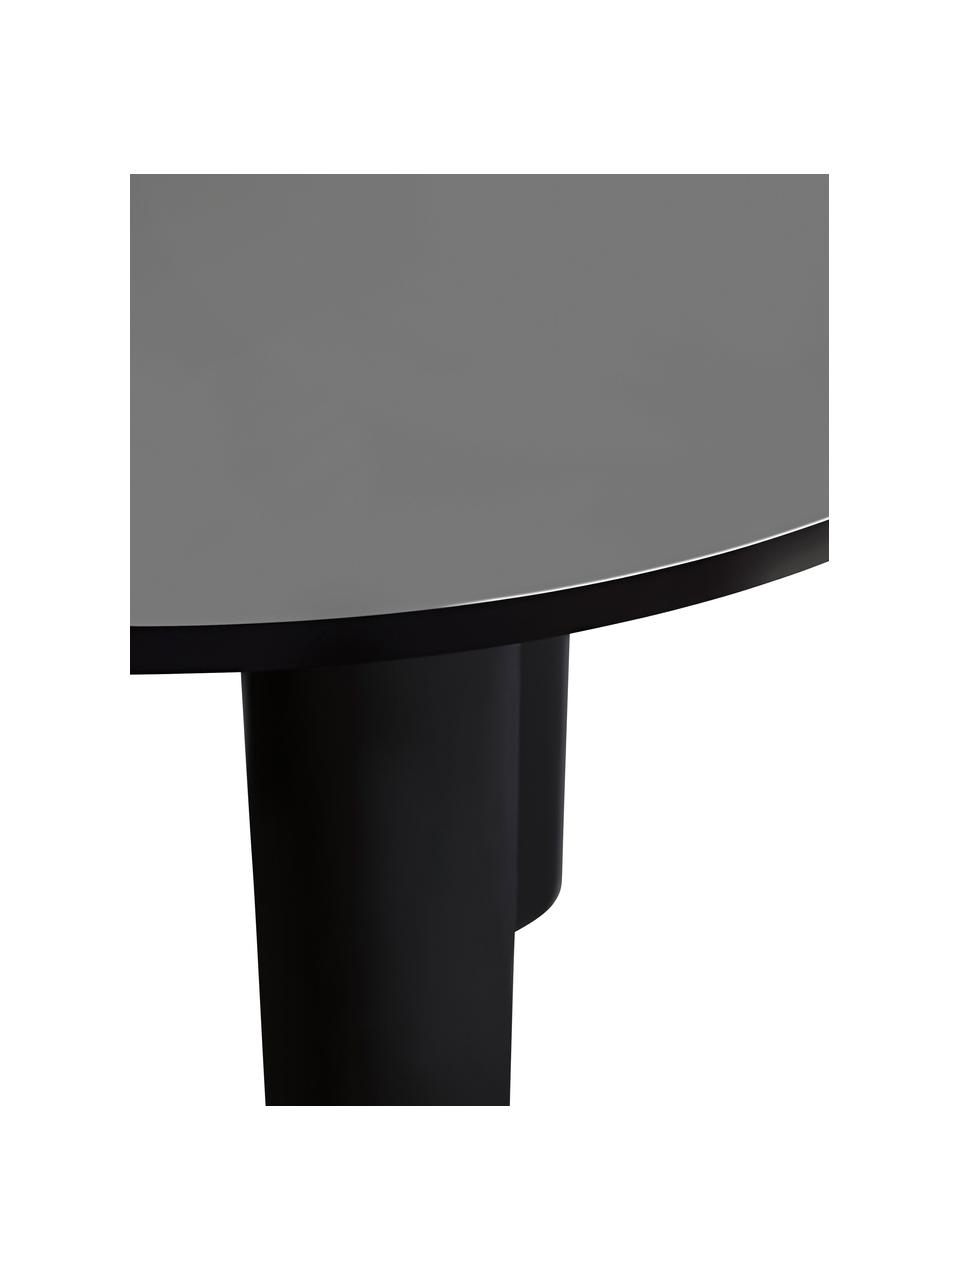 Runder Tisch Colette in Schwarz, Ø 120 cm, Mitteldichte Holzfaserplatte (MDF), beschichtet, Holz, schwarz lackiert, Ø 120 x H 72 cm